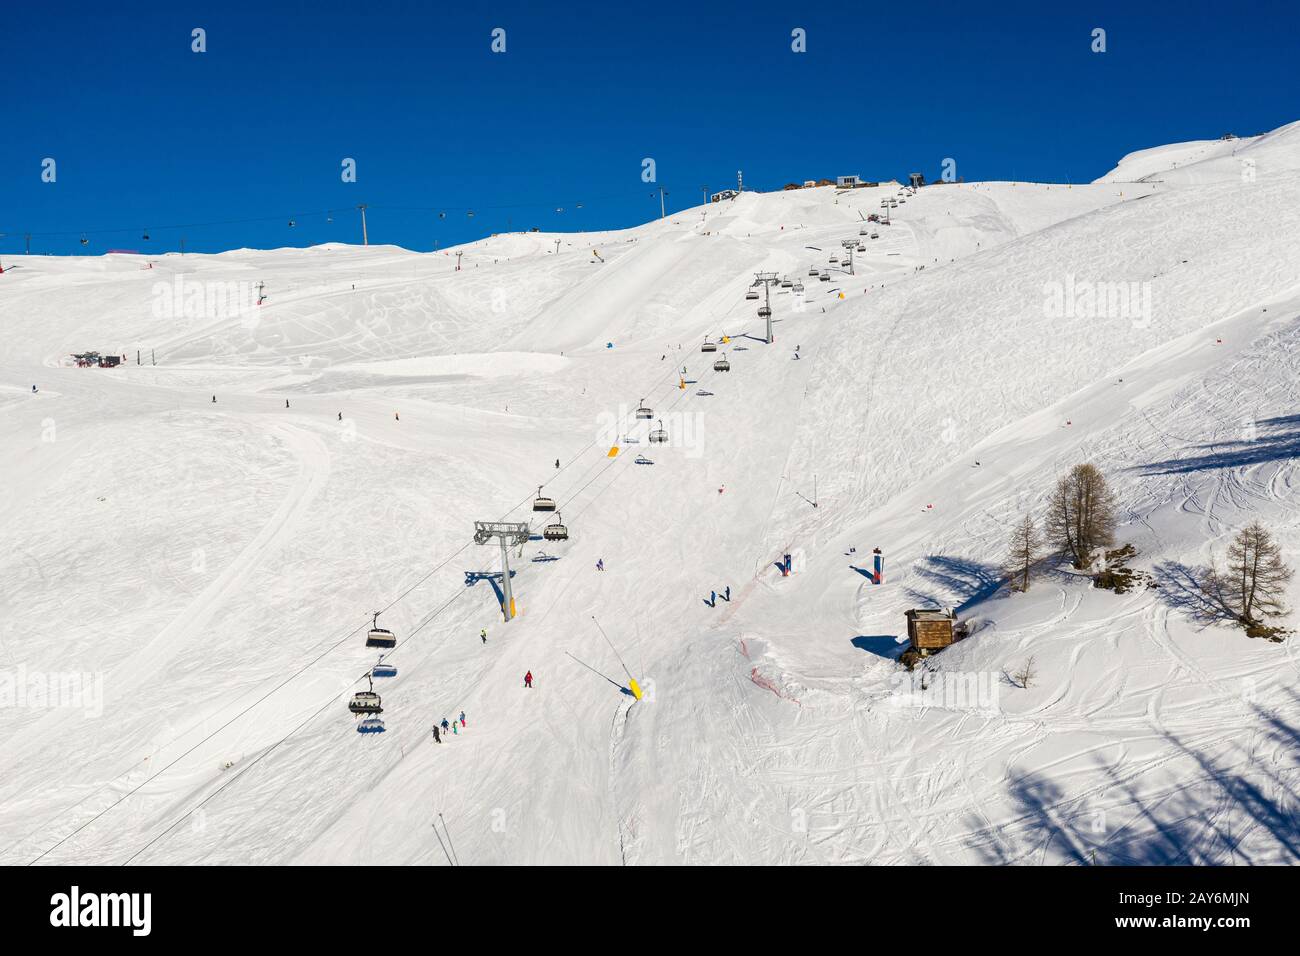 Vue aérienne de la station de ski Crans-montana et télésiège en hiver ensoleillé dans les alpes suisses du Valais, en Suisse Banque D'Images